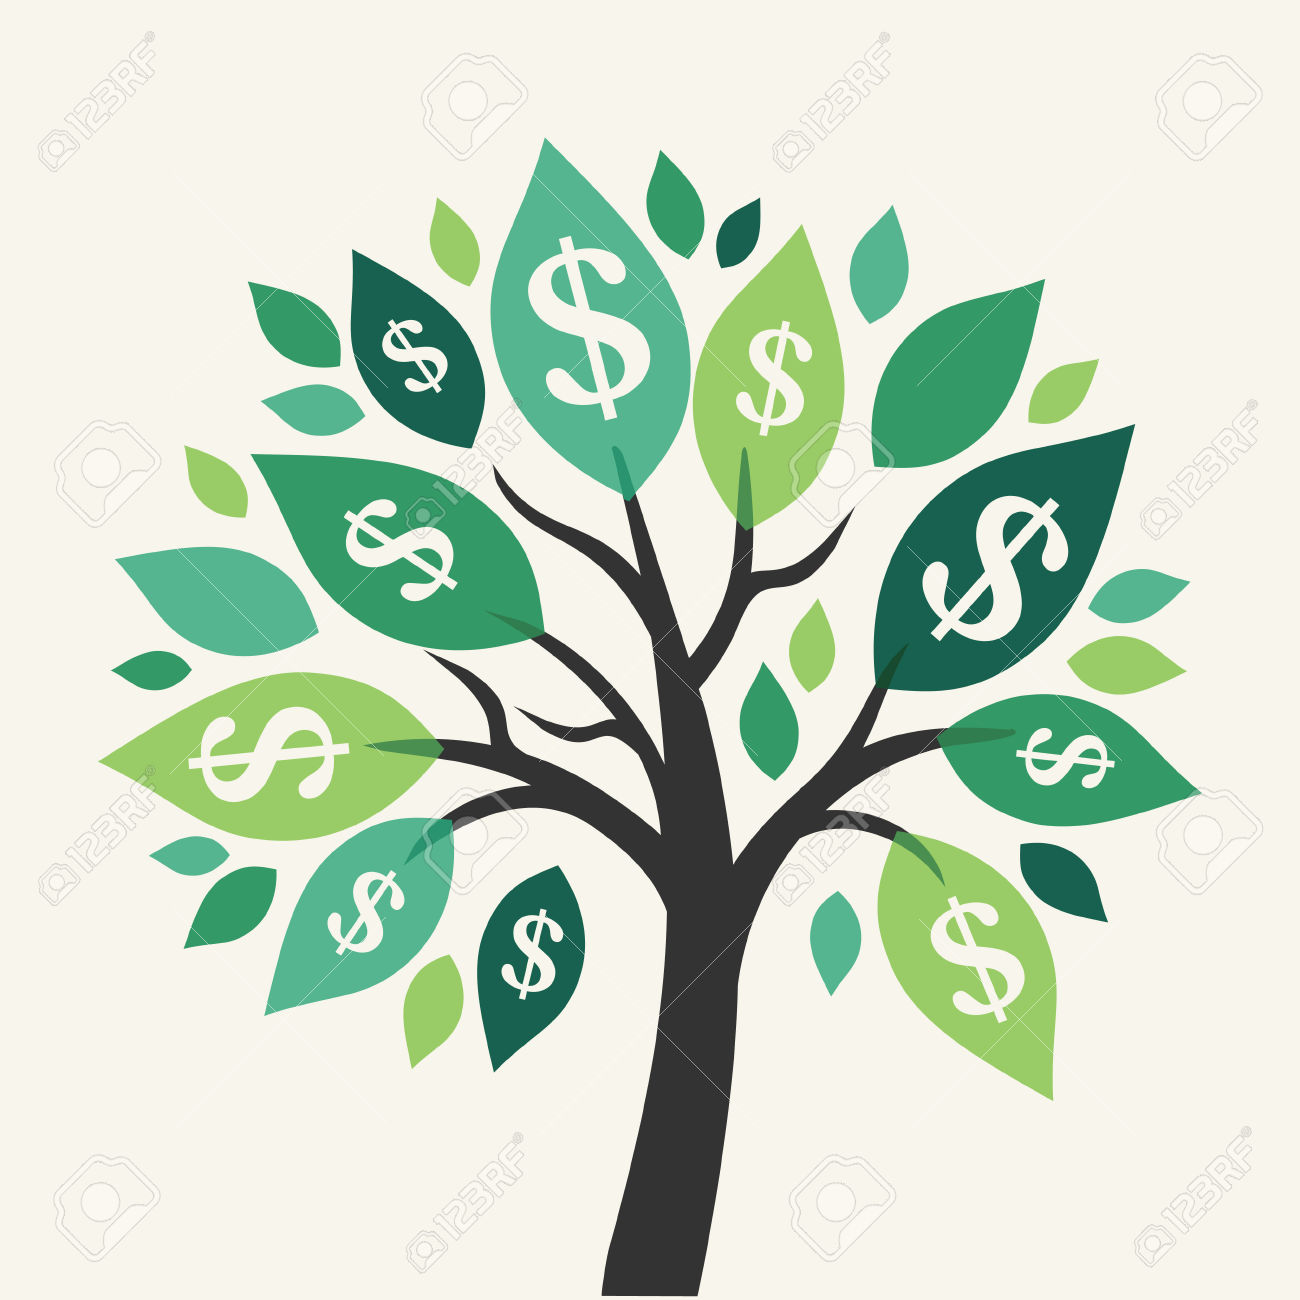 ... money tree vector money tree ...